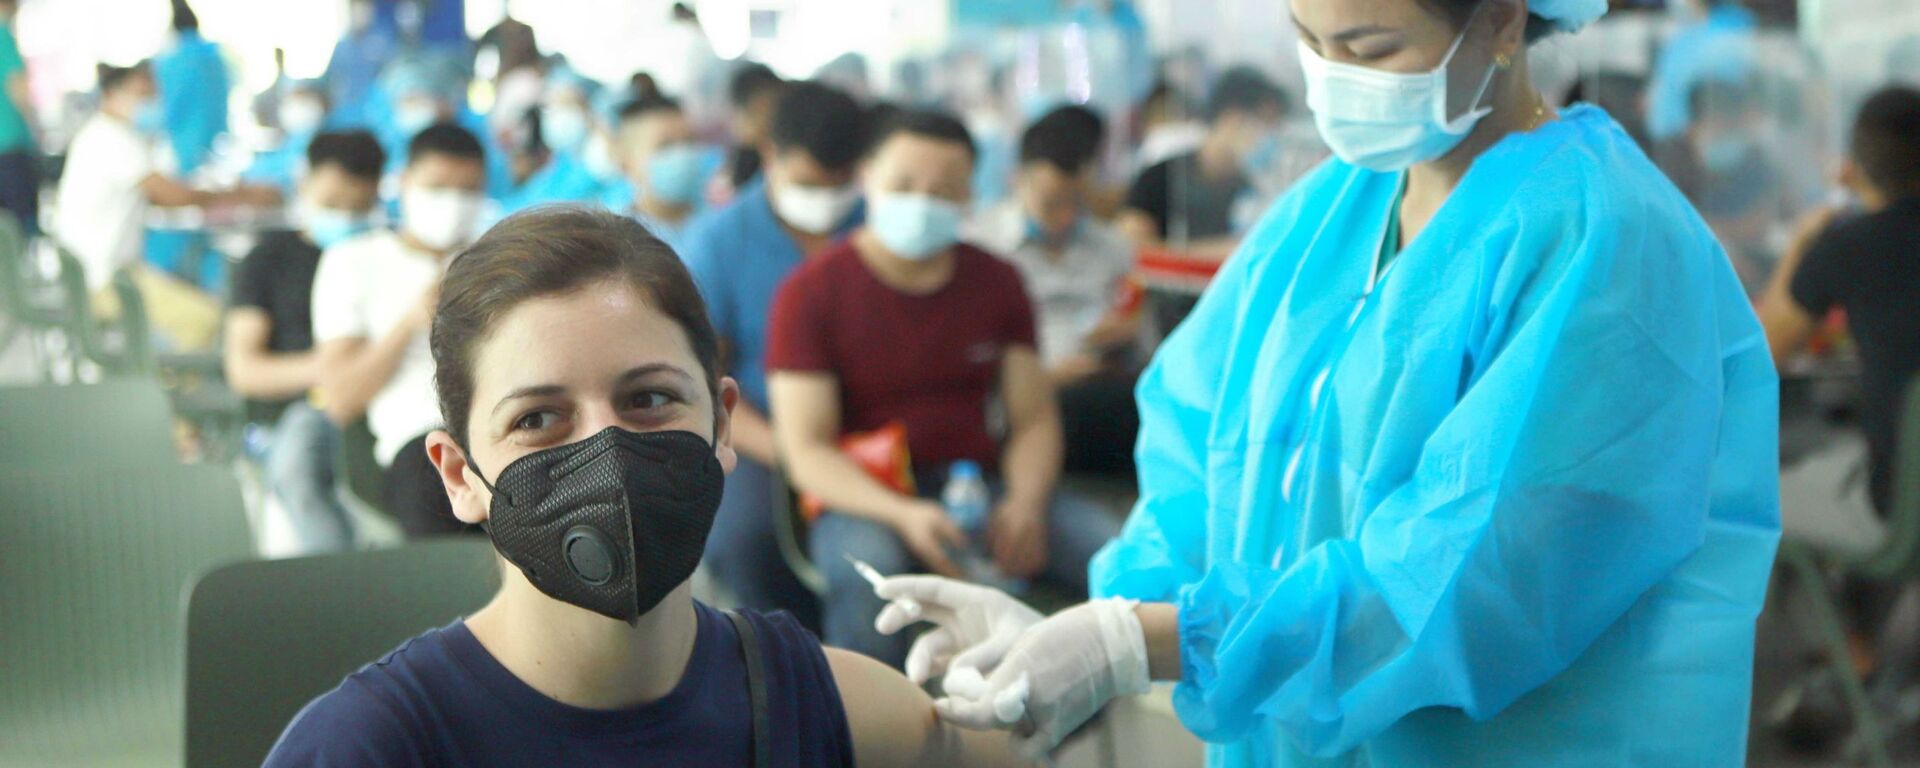 Vĩnh Phúc: 500 công nhân Công ty Piaggio Việt Nam được tiêm vaccine phòng COVID-19 - Sputnik Việt Nam, 1920, 04.08.2021